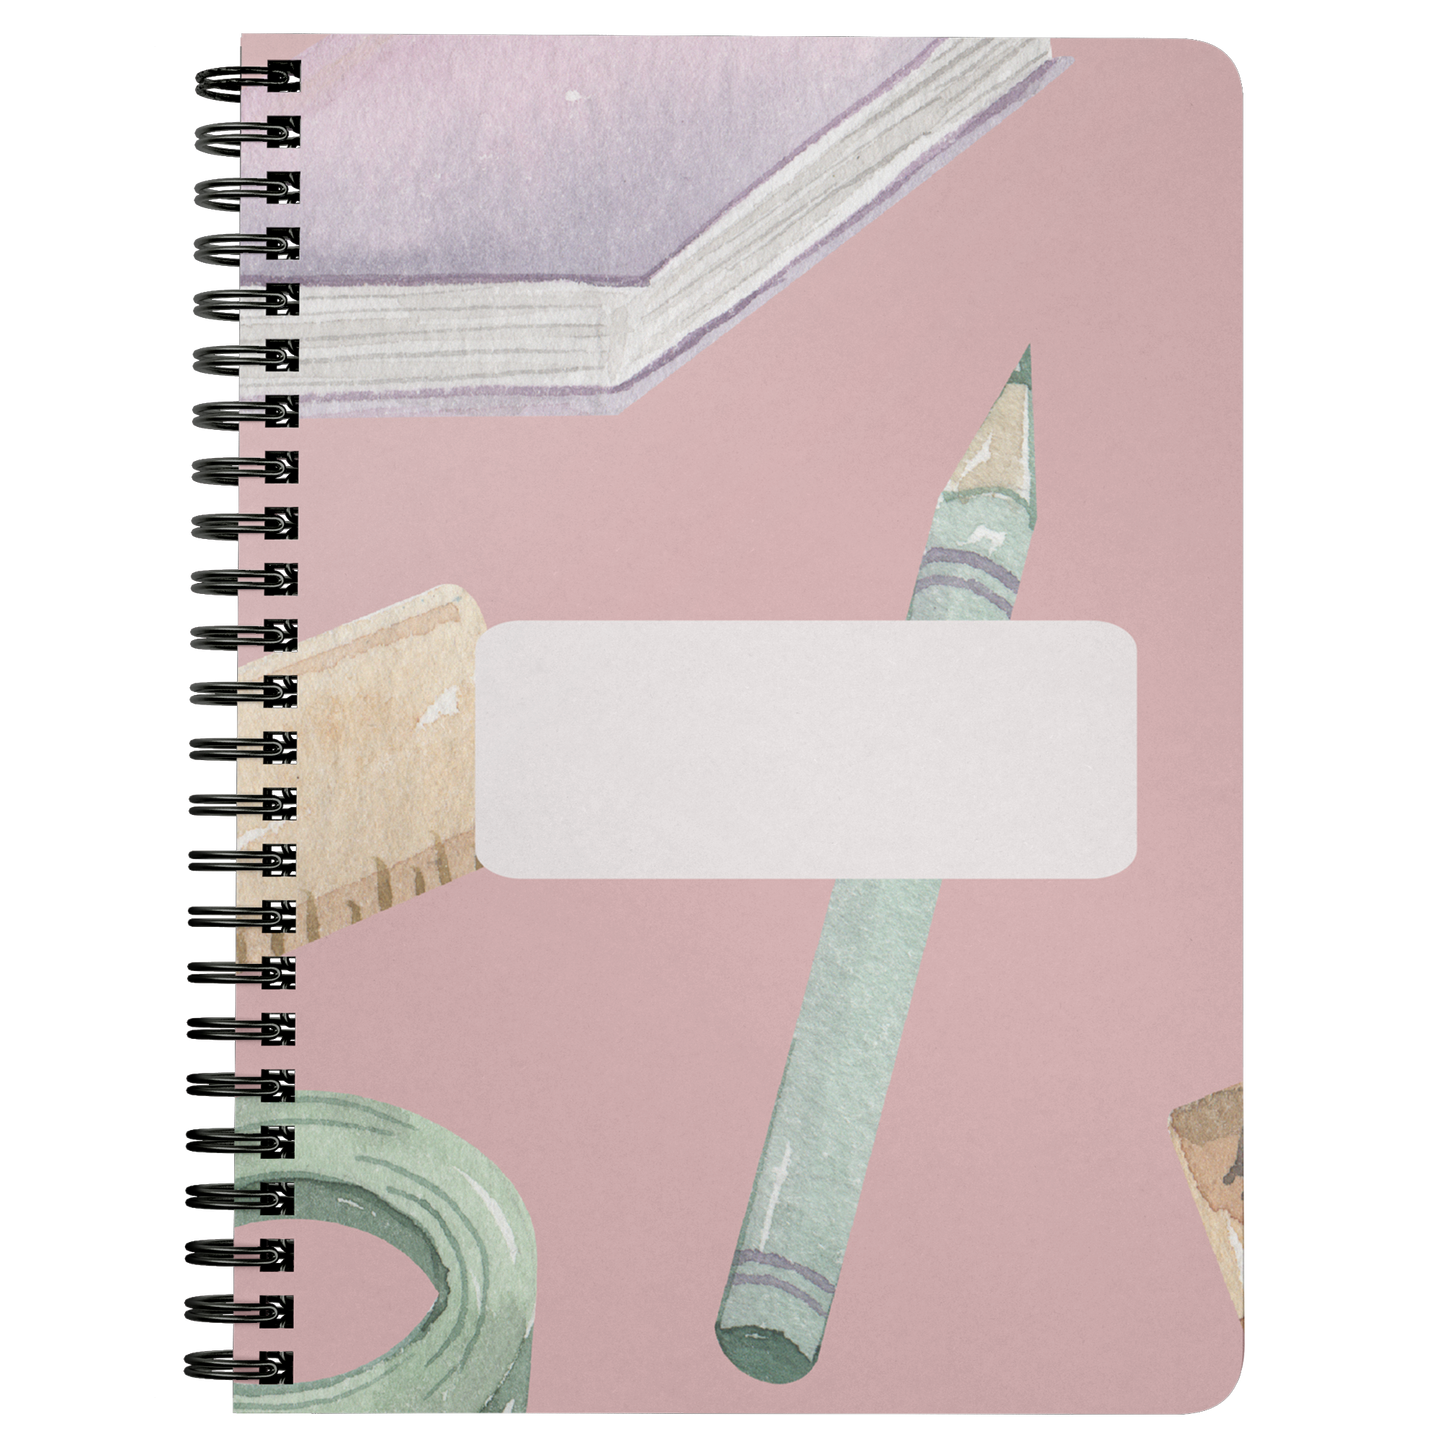 Notebook Journal Spiral School Writing Journal Lined Personal Spiral Notebook